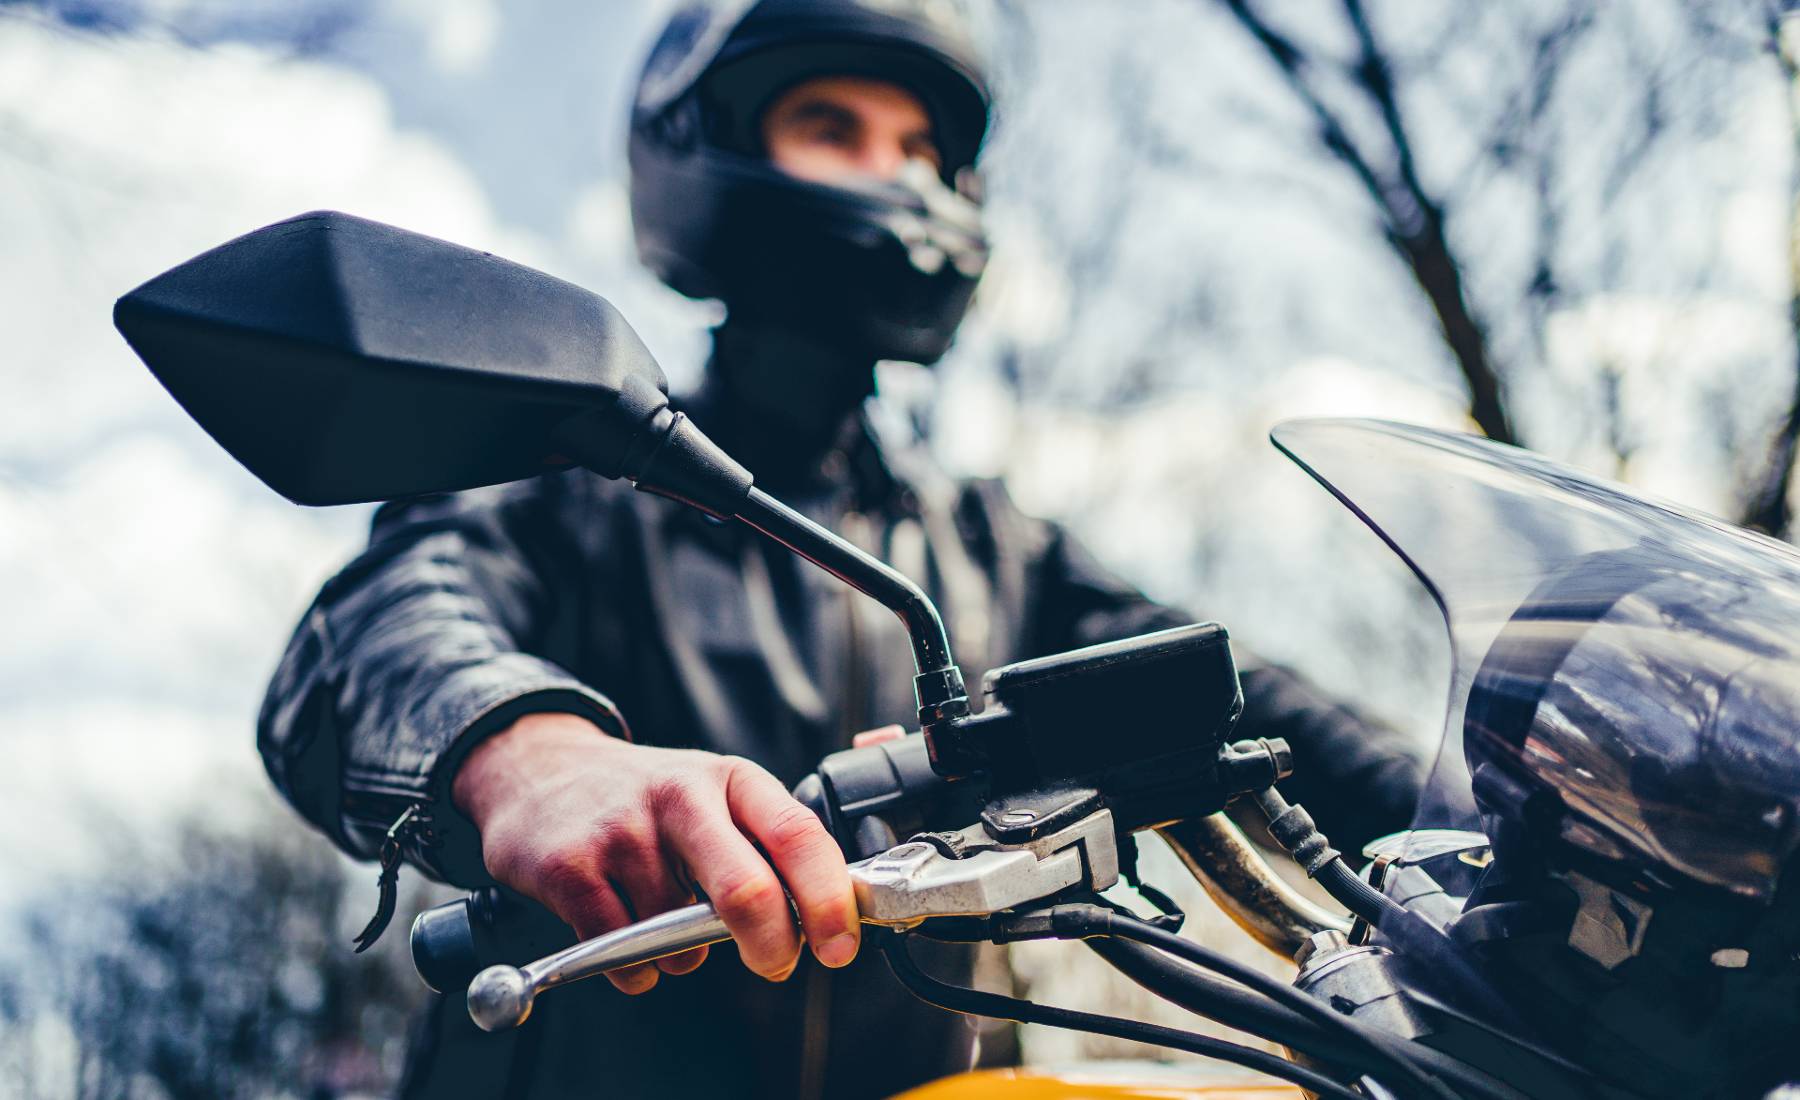 guantes de moto, guantes con protecciones, guantes moto de invierno